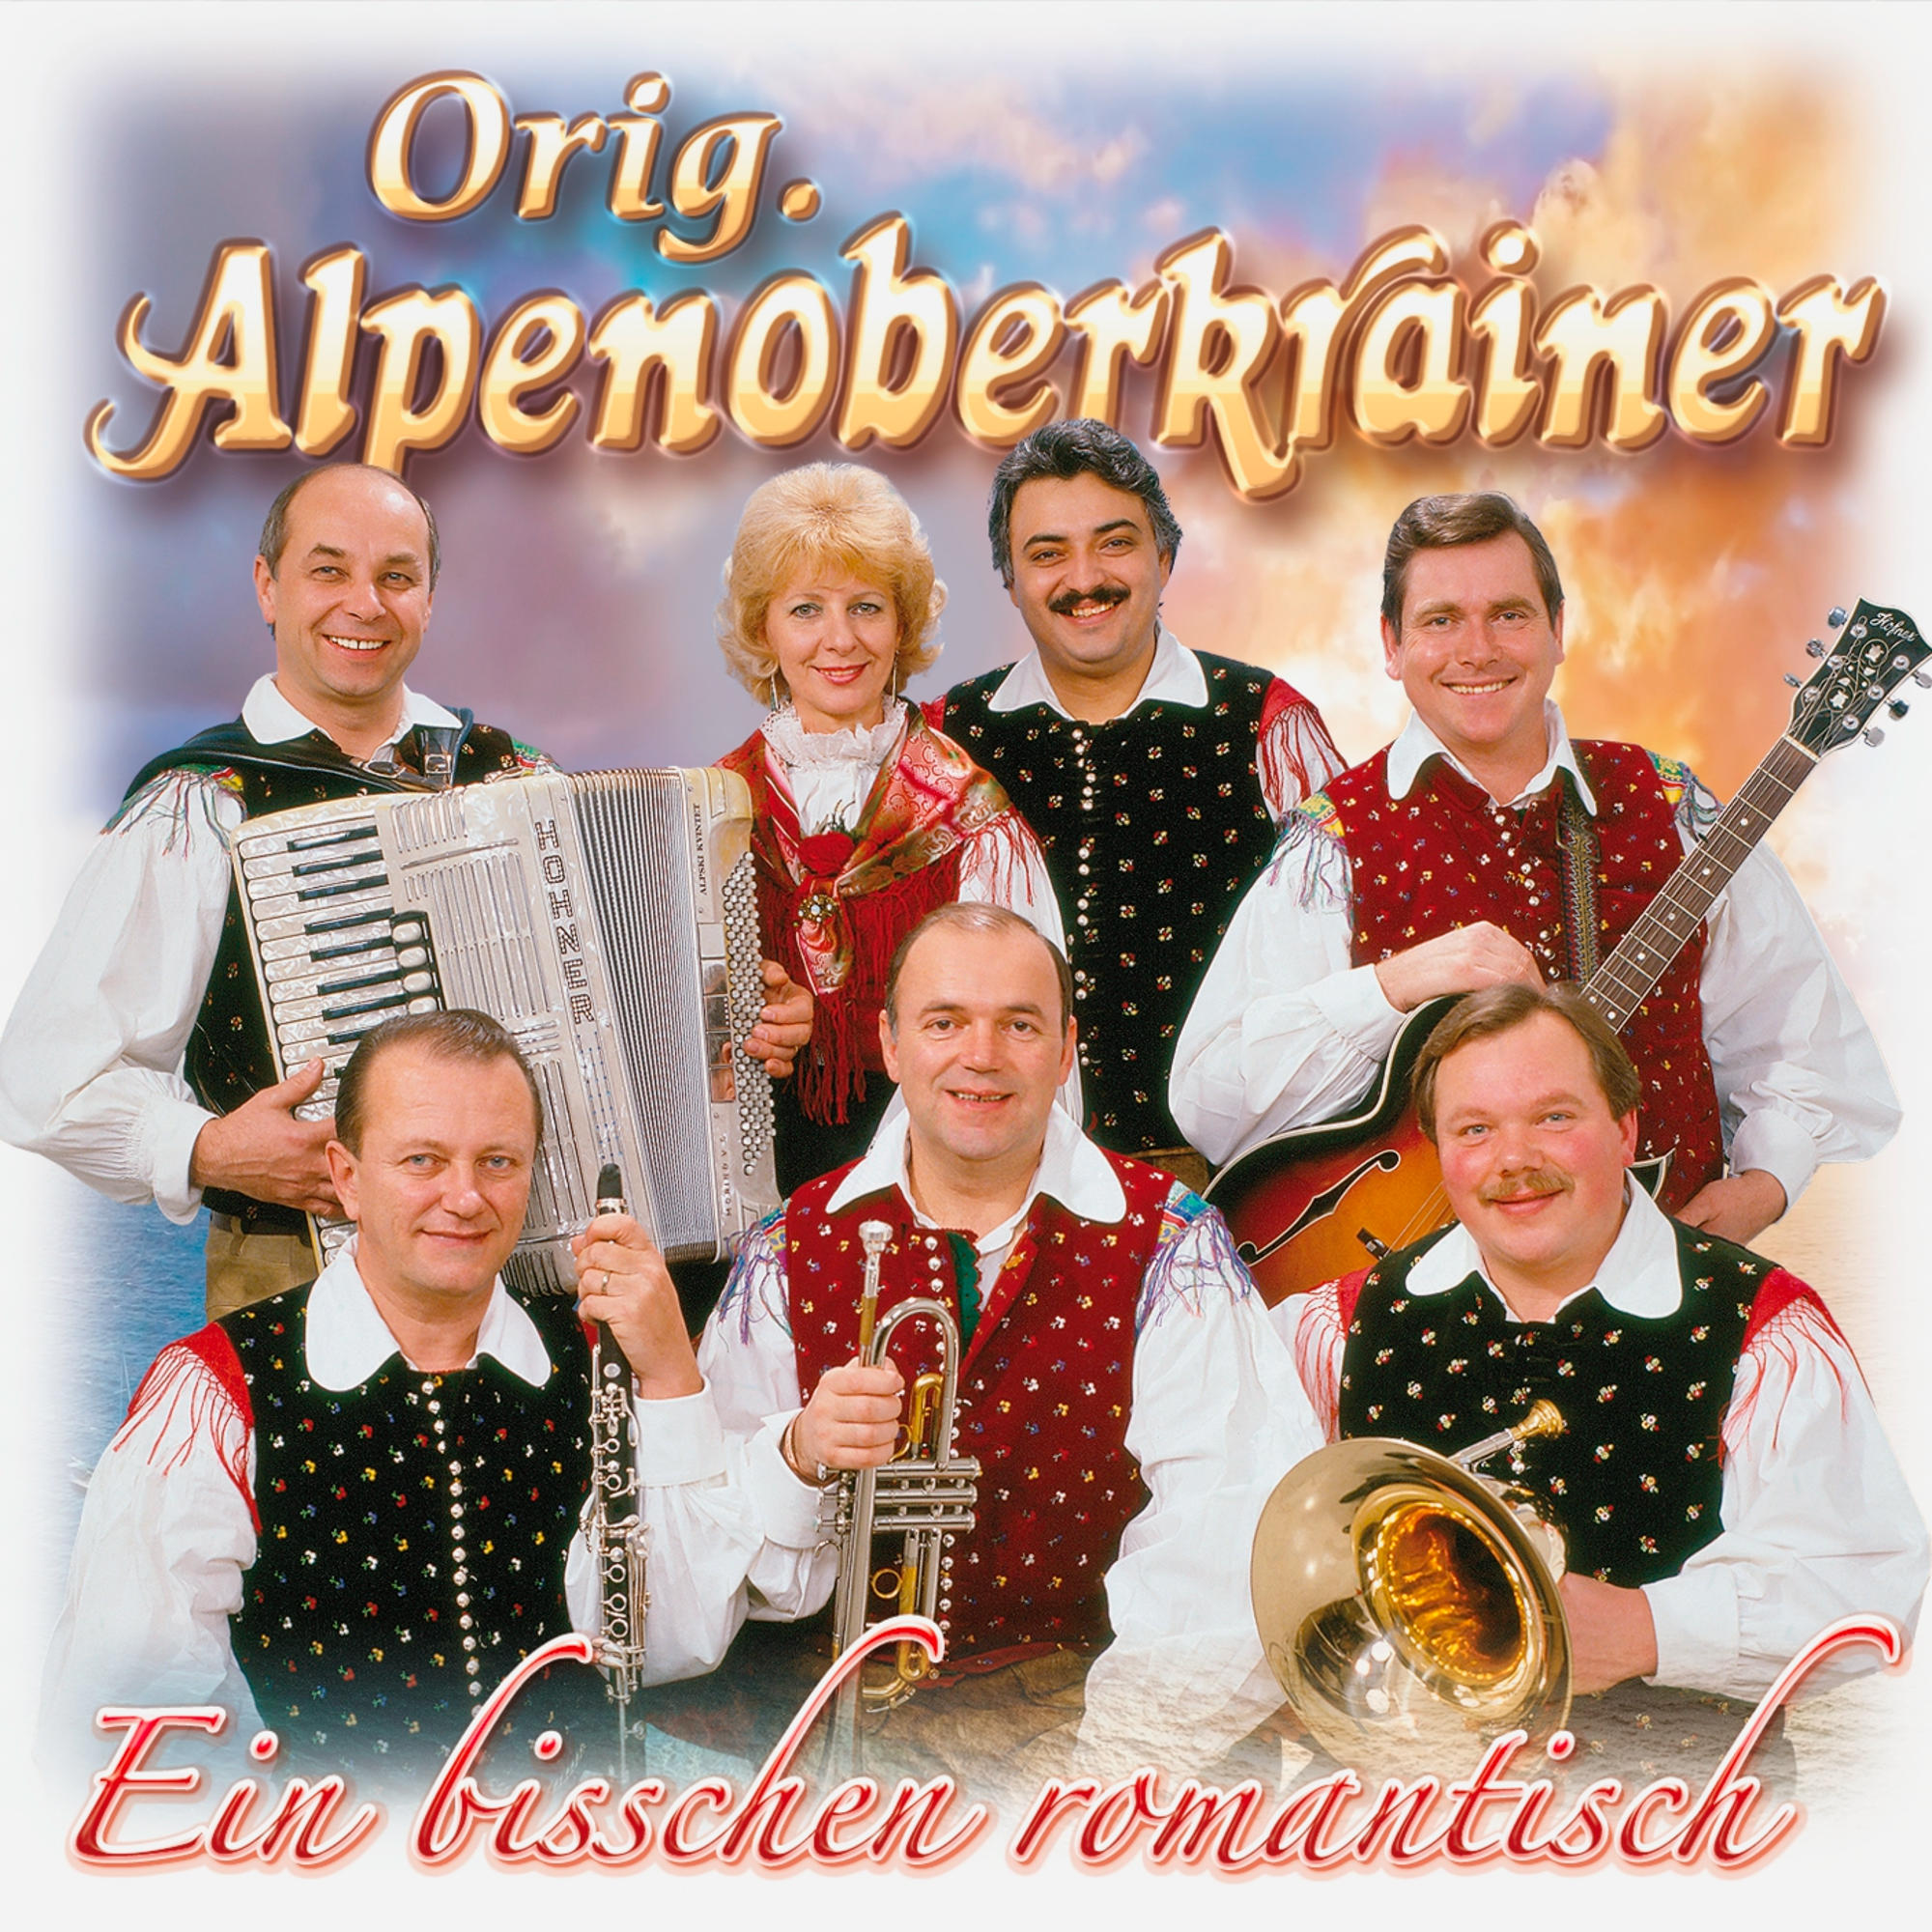 Romantisch Alpenoberkrainer (CD) - Bisschen - Original Ein